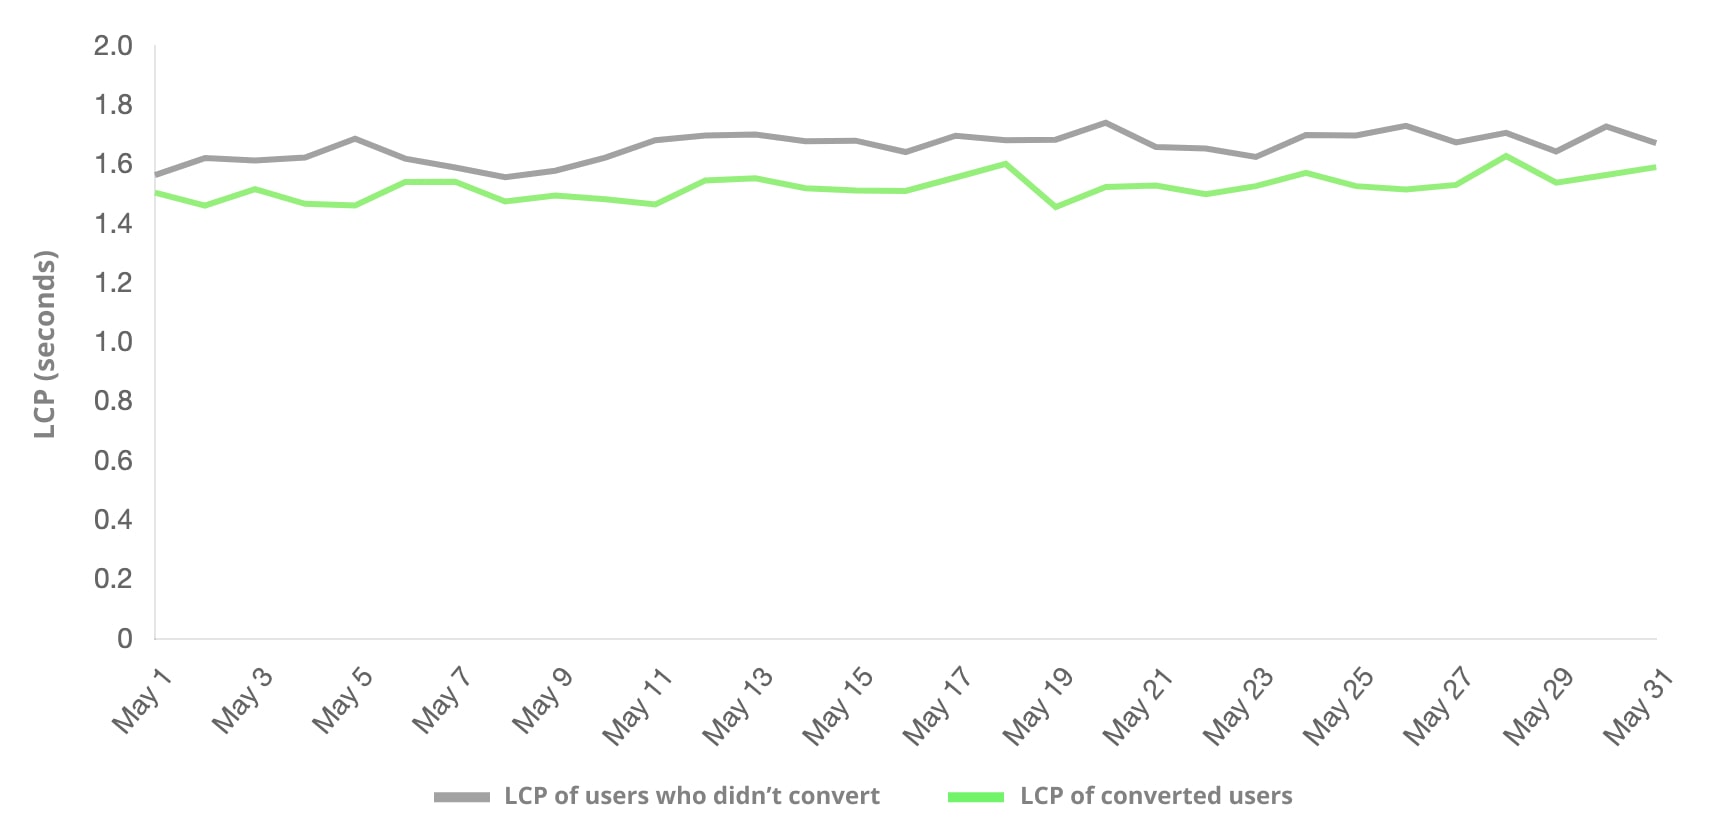 השוואה בין משתמשים שהשלימו המרה לבין משתמשים שלא ביצעו המרה באמצעות LCP. בקבוצת המשתמשים שביצעו המרה לעיתים קרובות יותר היה מדד LCP נמוך יותר.